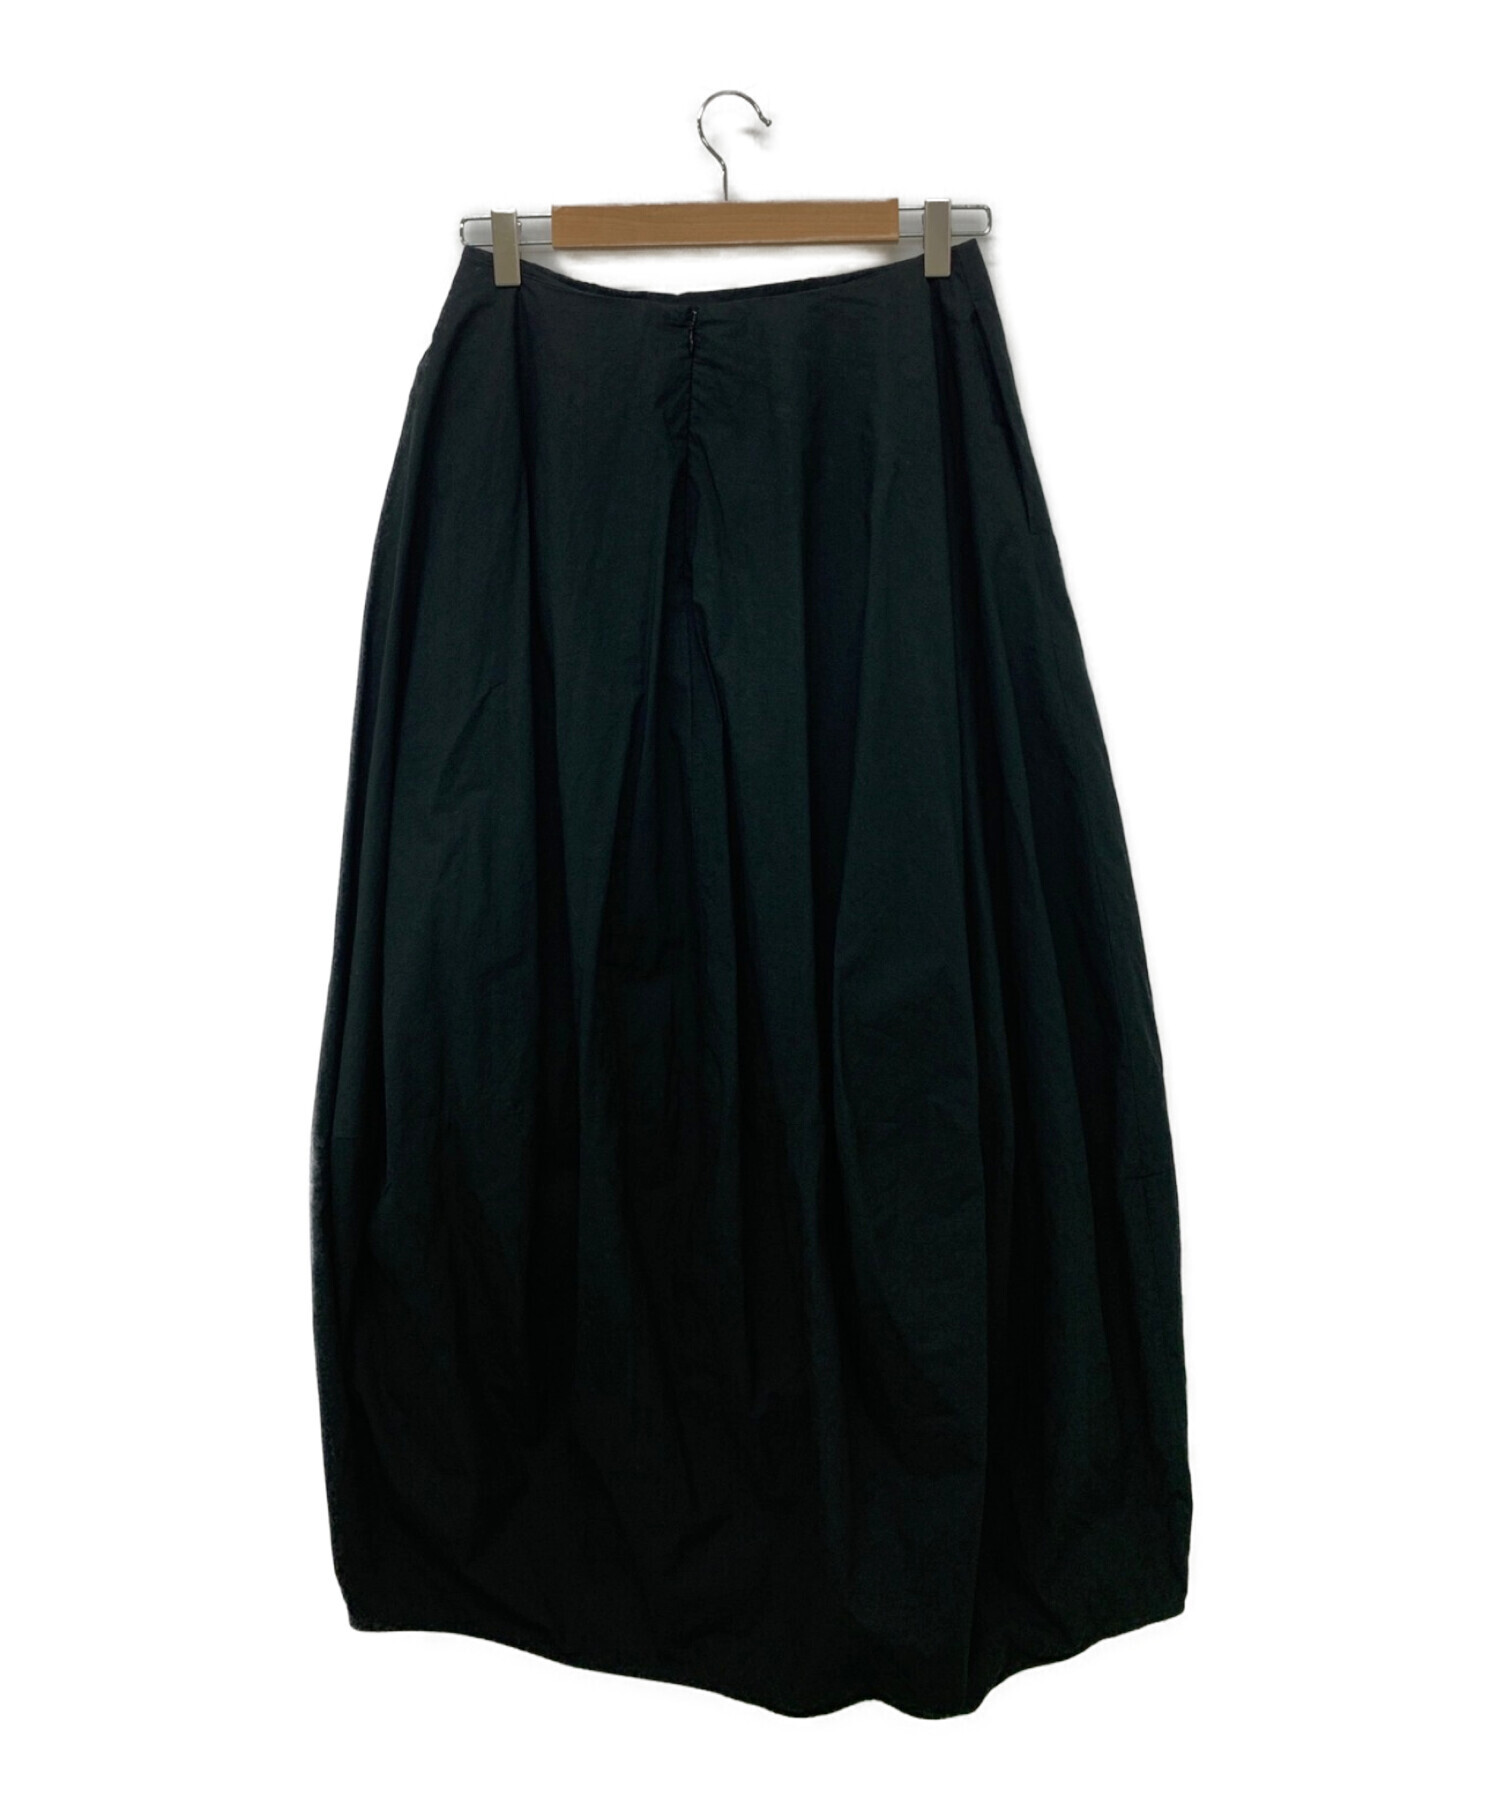 nagonstans (ナゴンスタンス) Washedタイプライター バルーンスカート ブラック サイズ:38